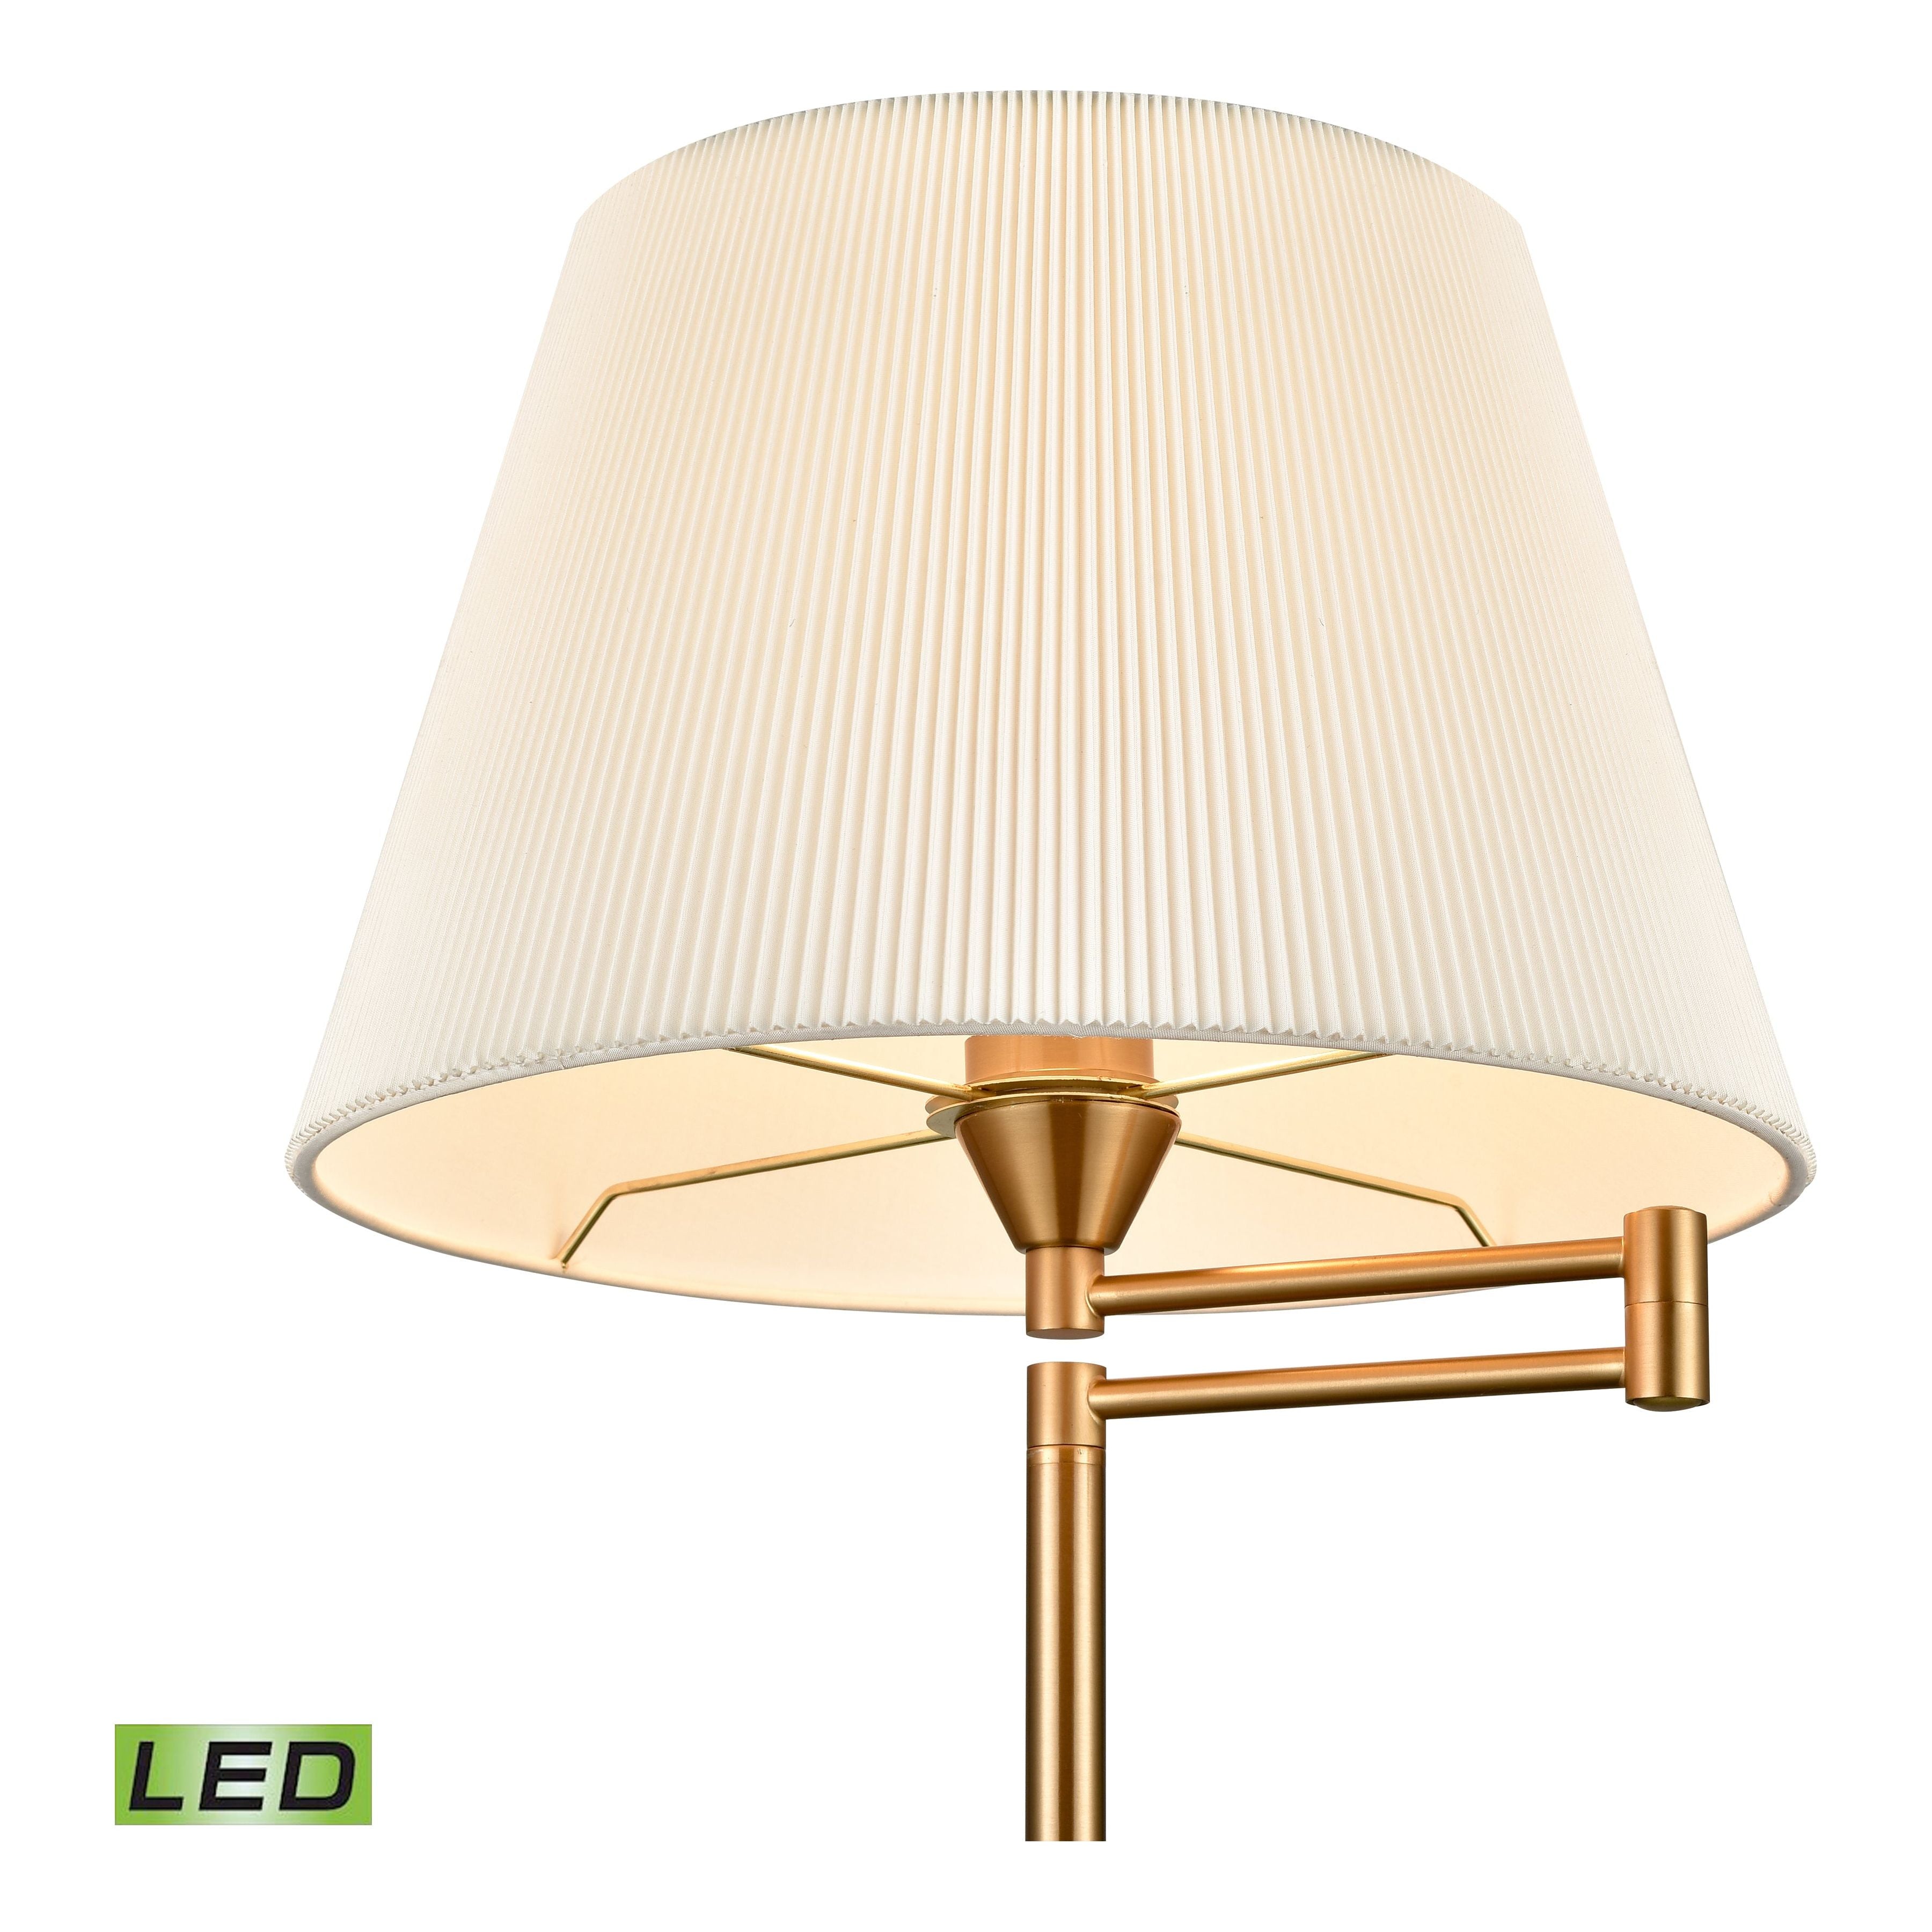 Scope 65" High 1-Light Floor Lamp